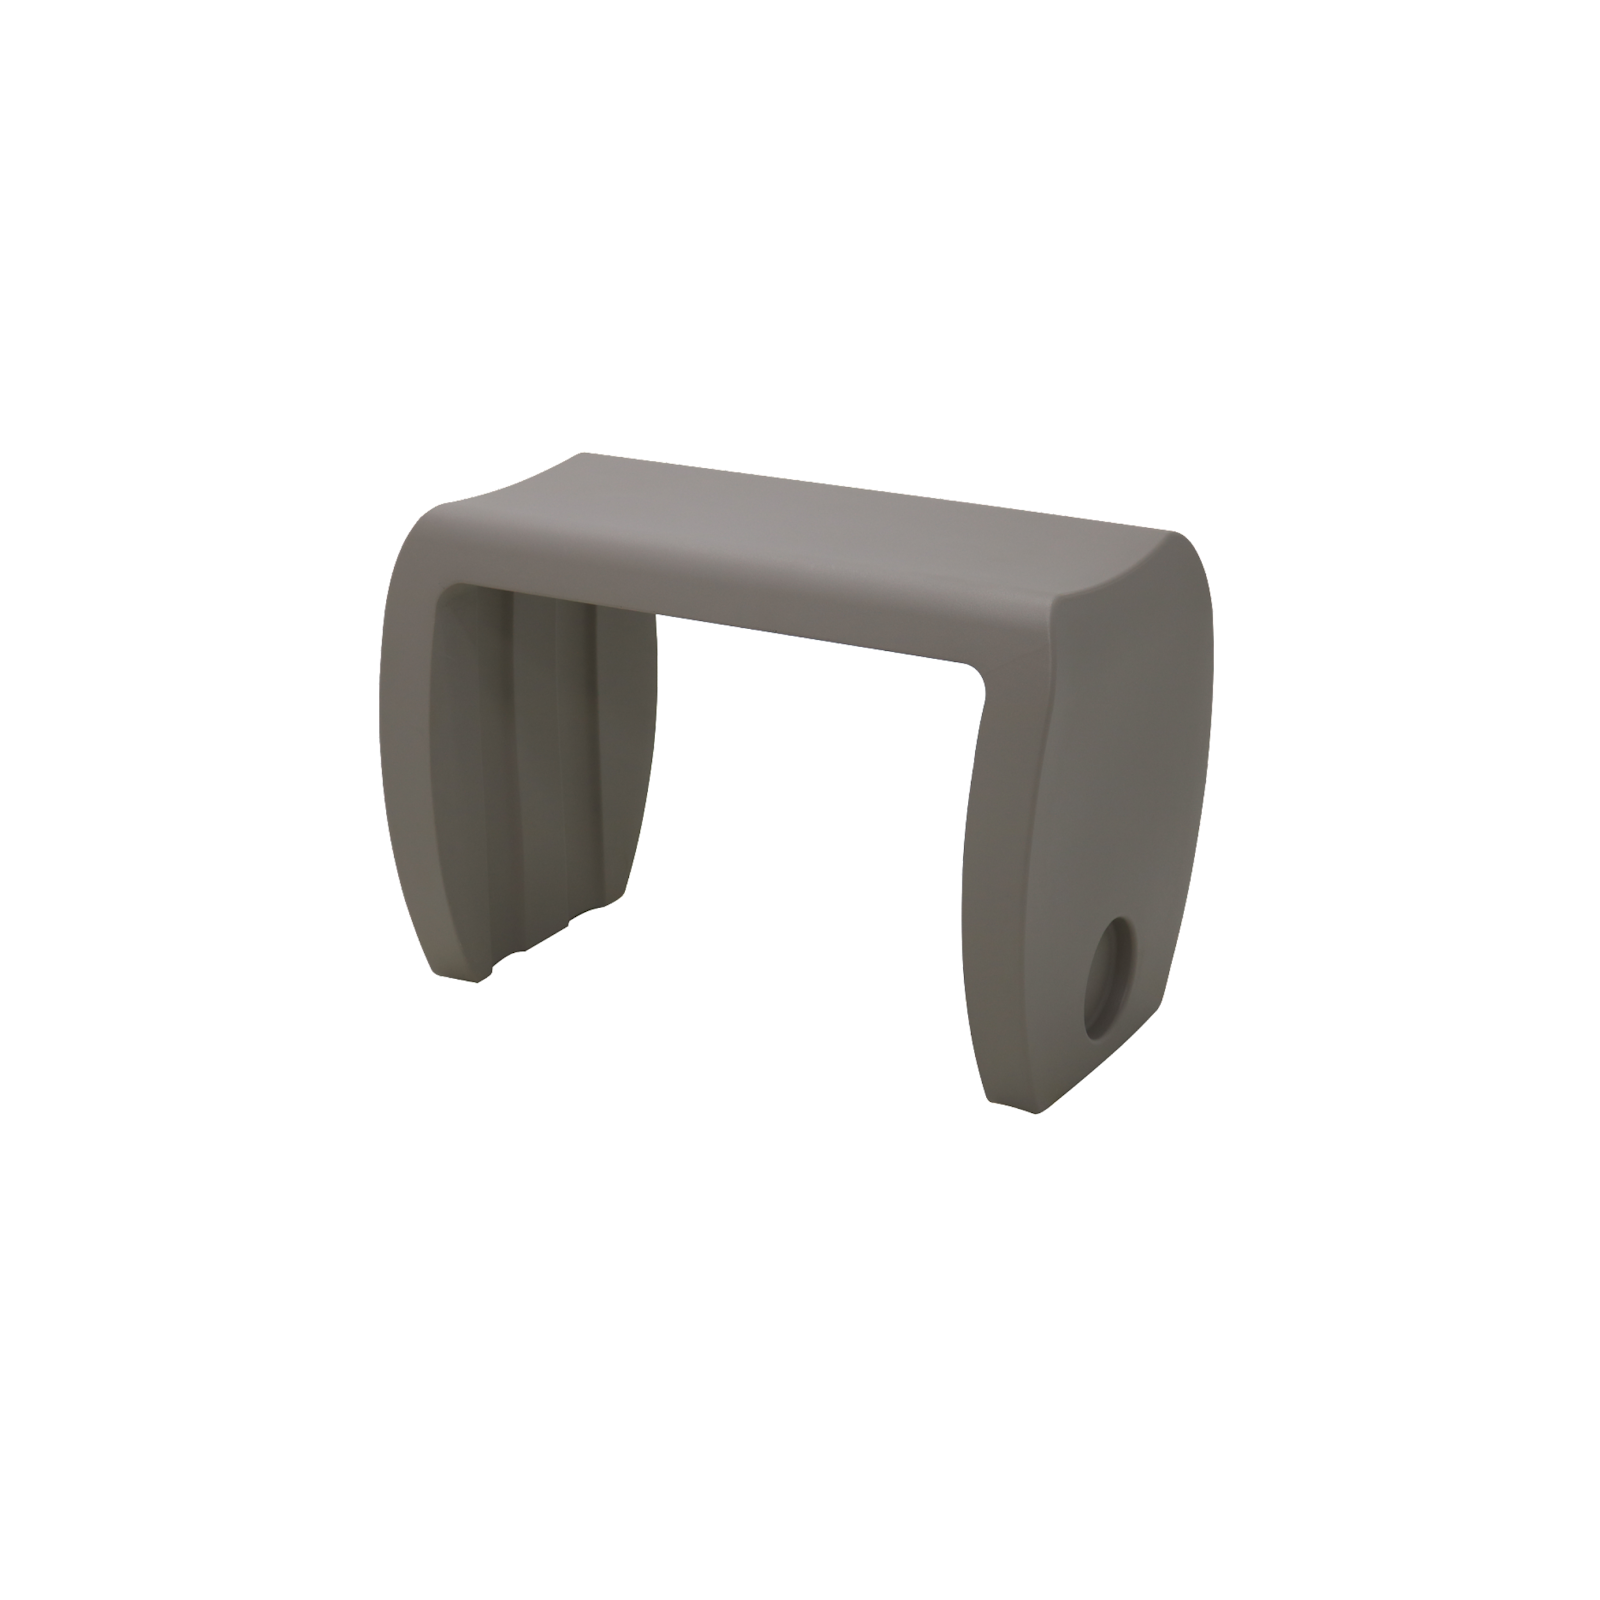 Tabouret/table basse vira 37x42cm h60cm. Polyéthylène rotomoulé ciment.